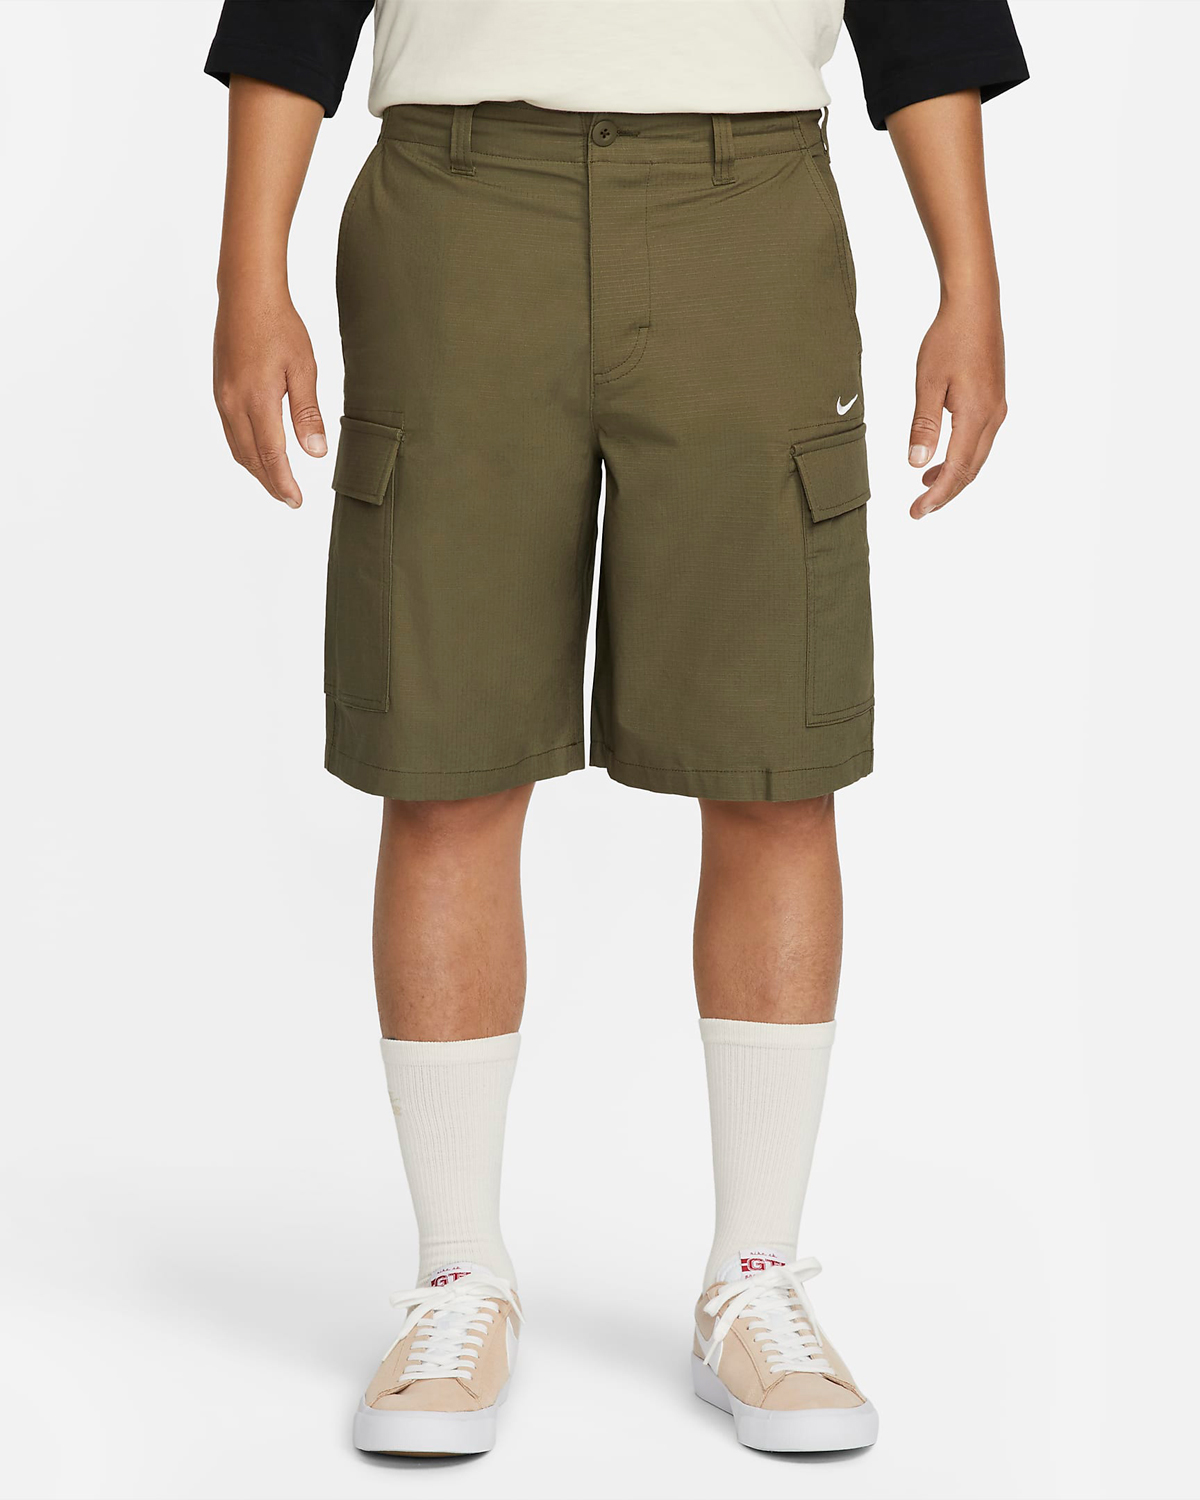 Nike-SB-Cargo-Shorts-Medium-Olive